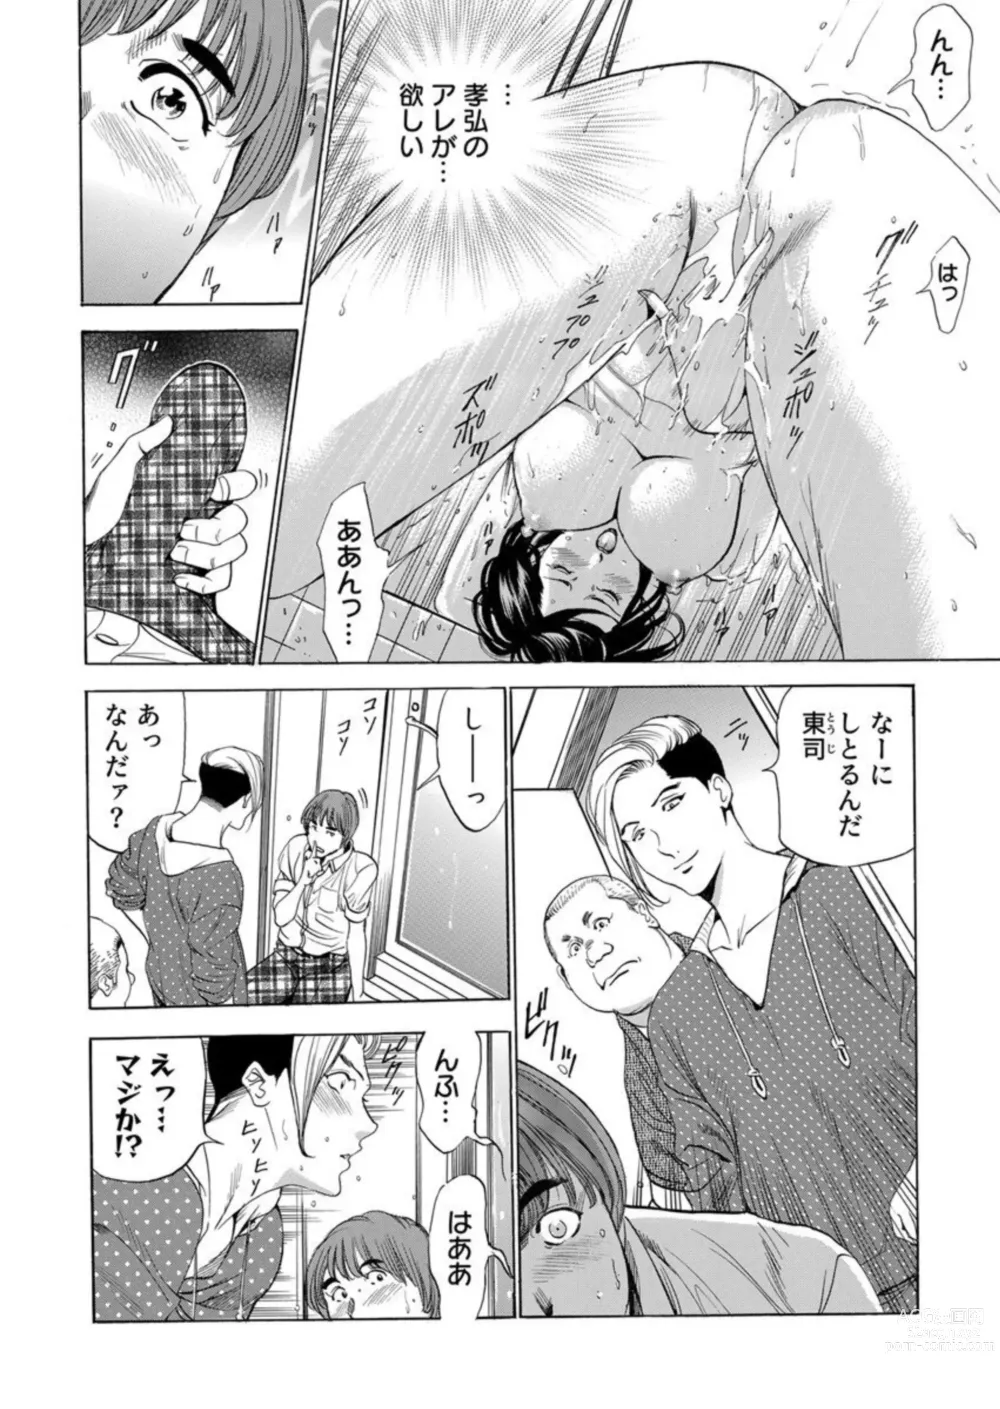 Page 8 of manga Totsugisaki wa Tsureko ga 9 nin!? Gibo, Musukotachi to no sei Kankei ni Nayamu 1